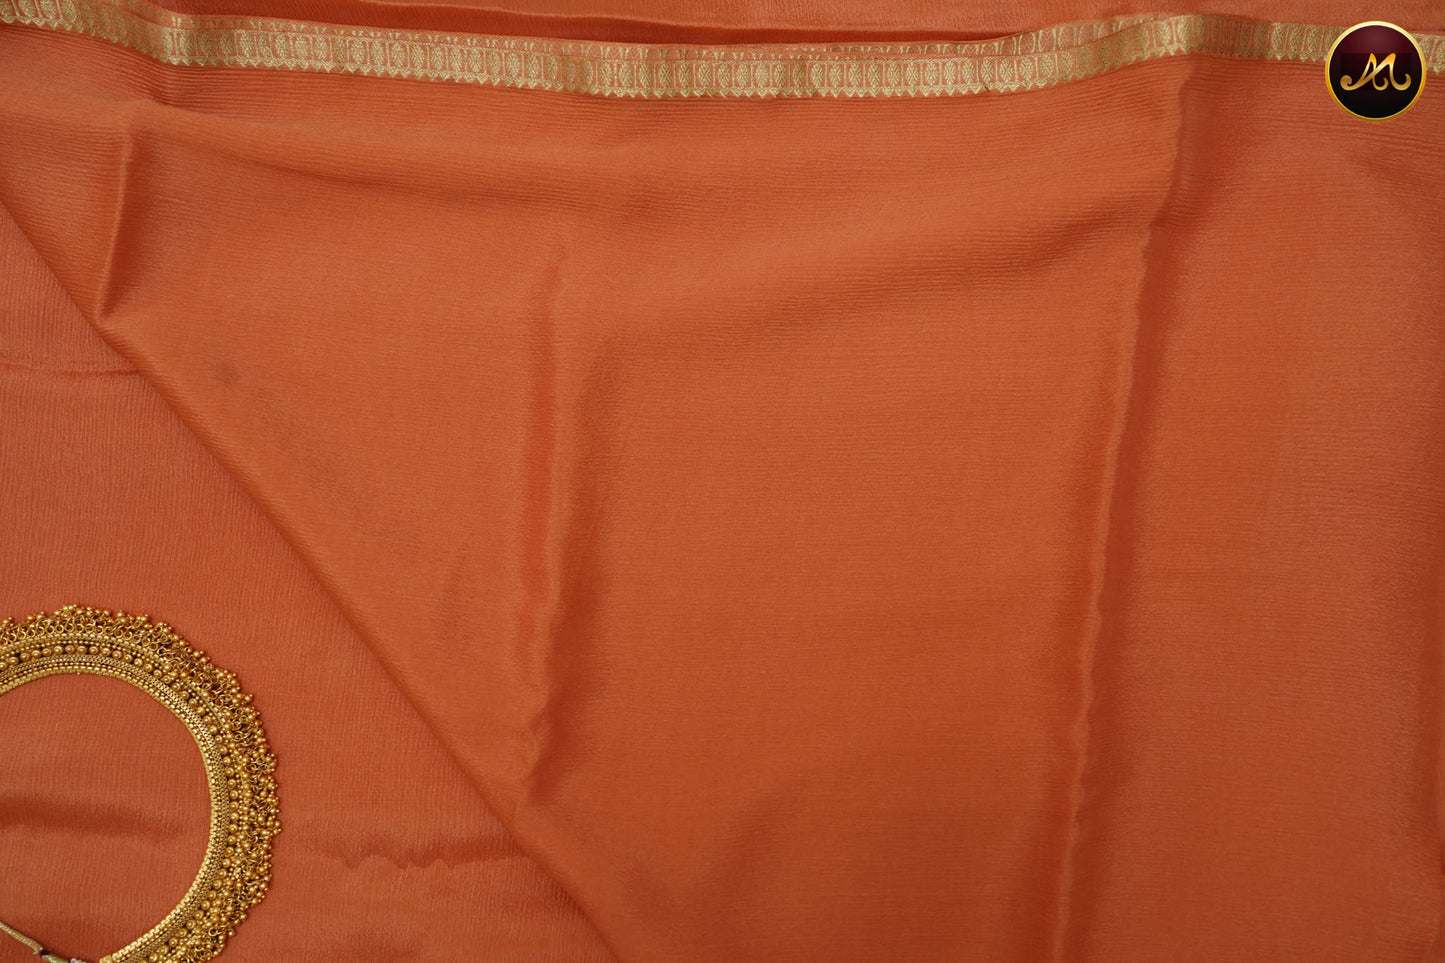 Mysore Double wrinkle Crepe Silk saree  in allself Peach colour small  Gold zari Border 350gm